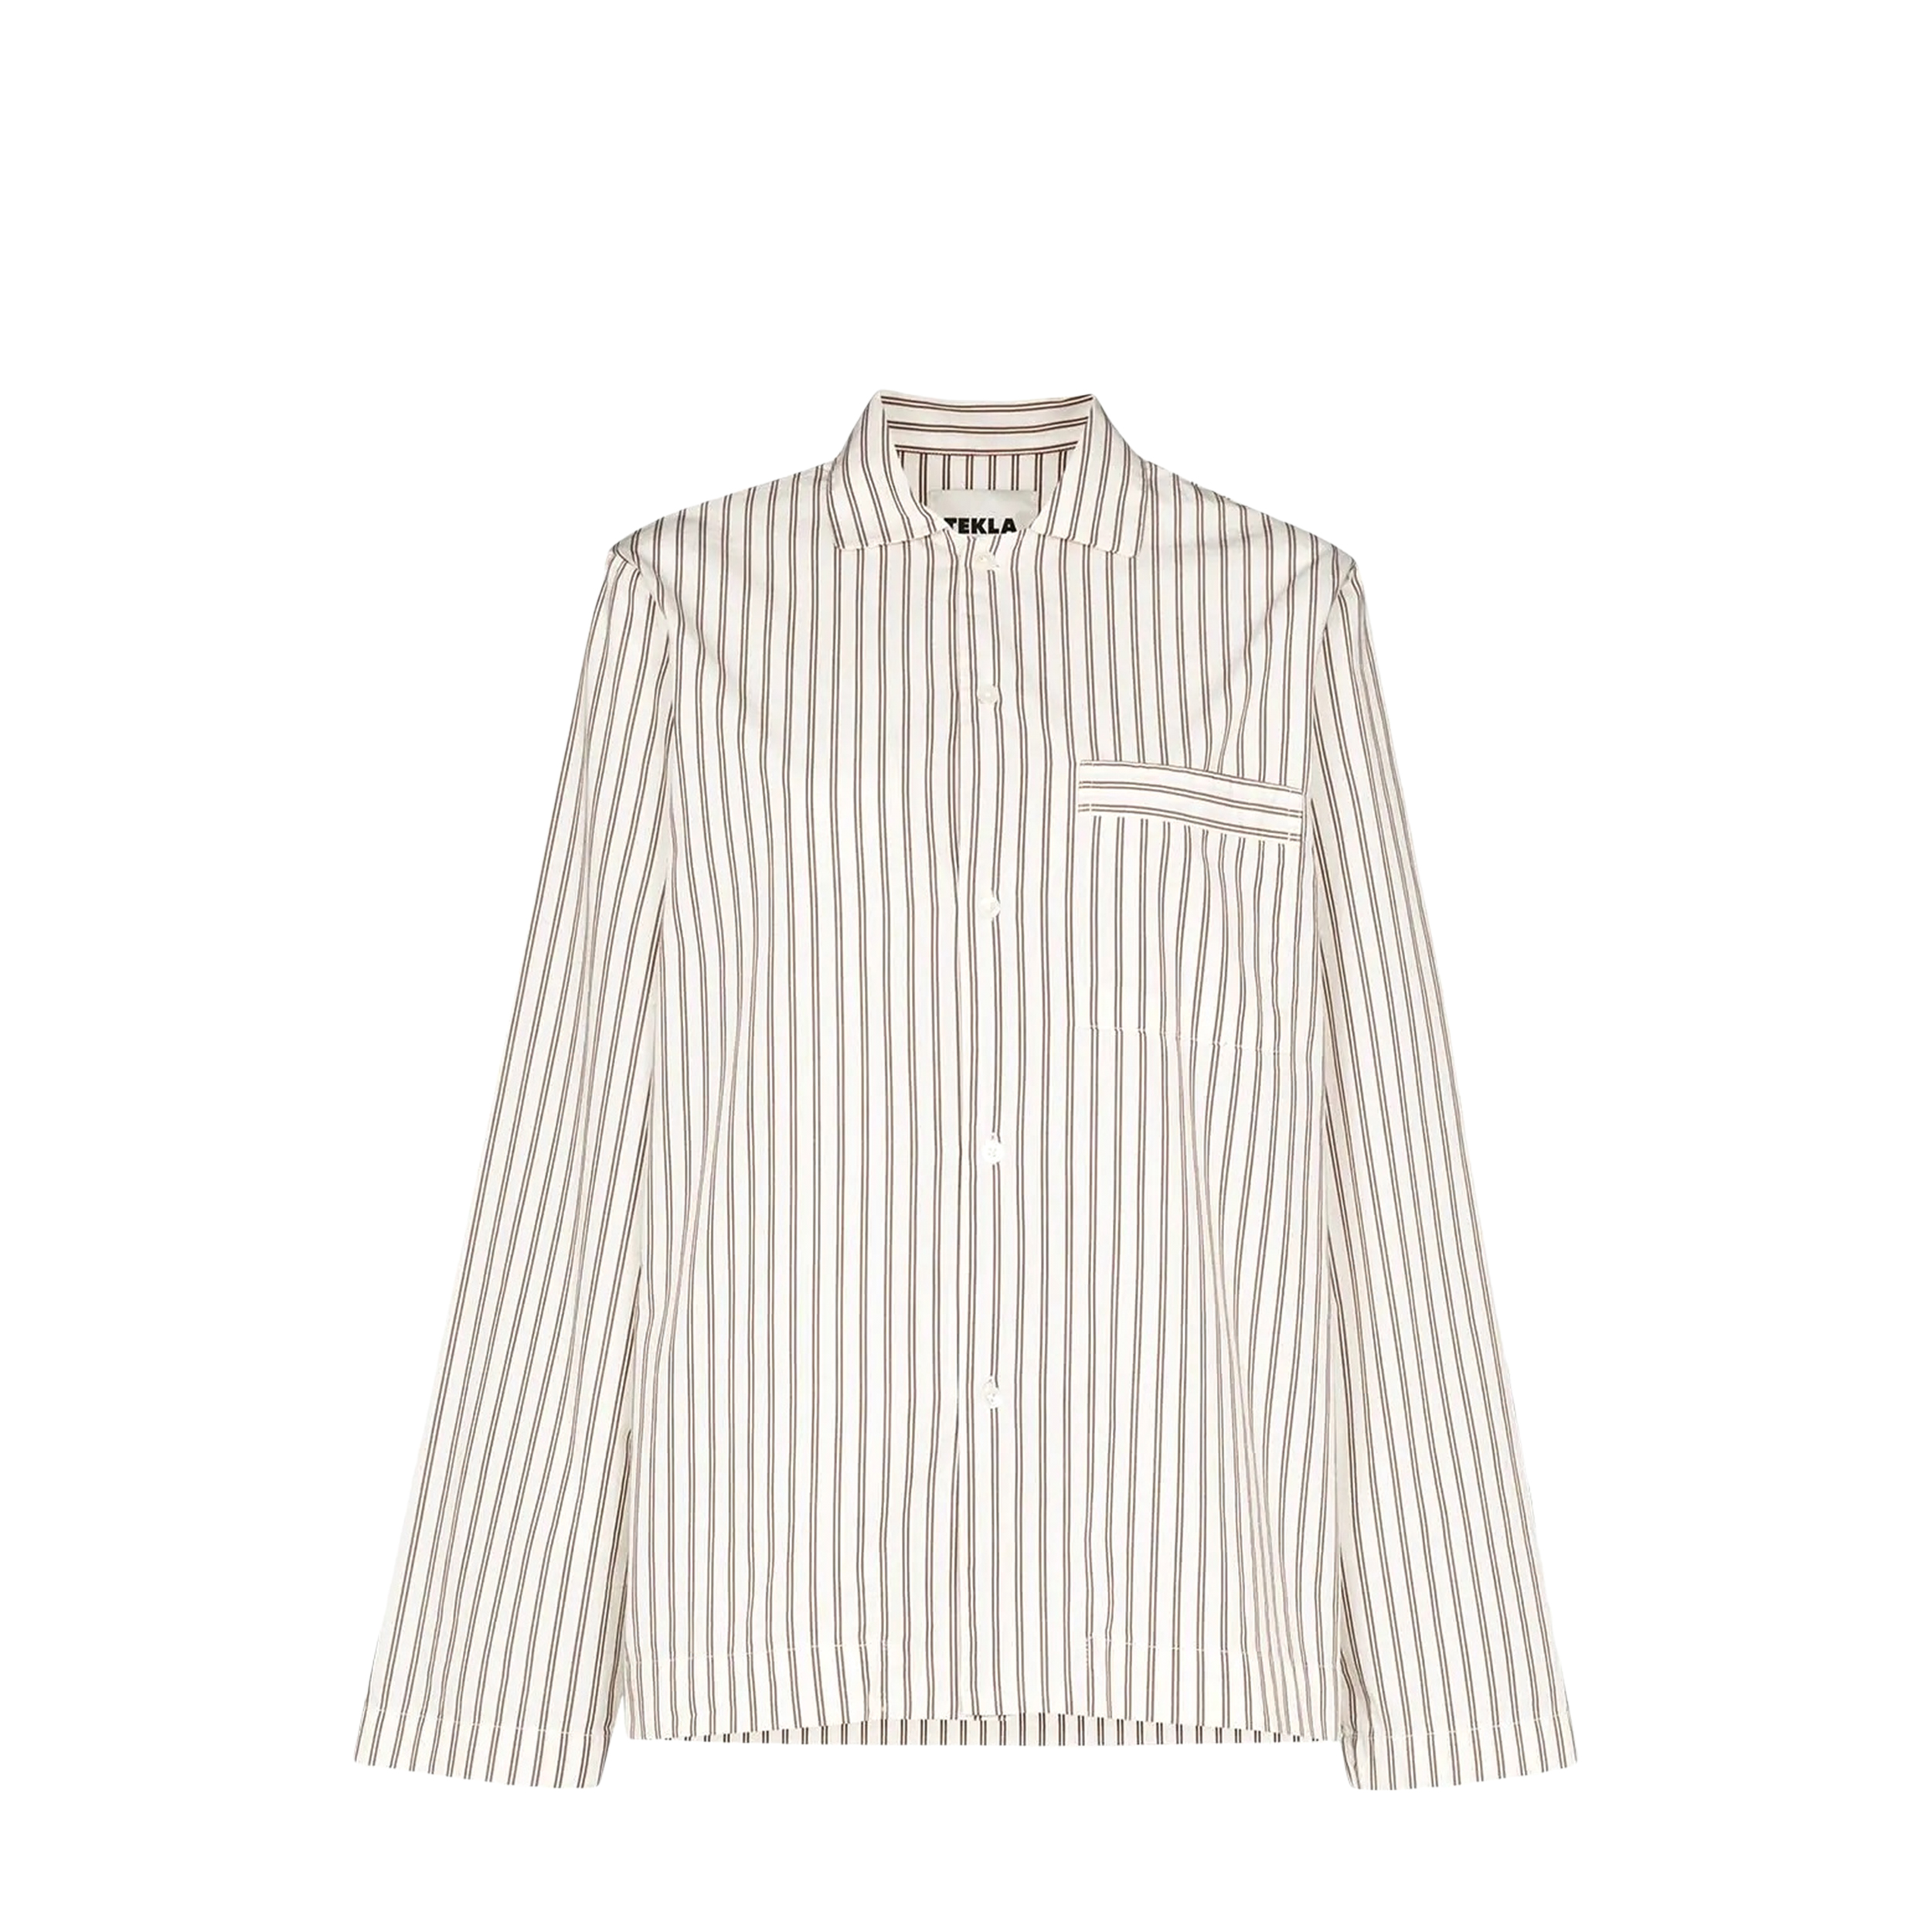 Tekla Tekla Poplin Pyjamas Shirt White & Brown Striped (XL)